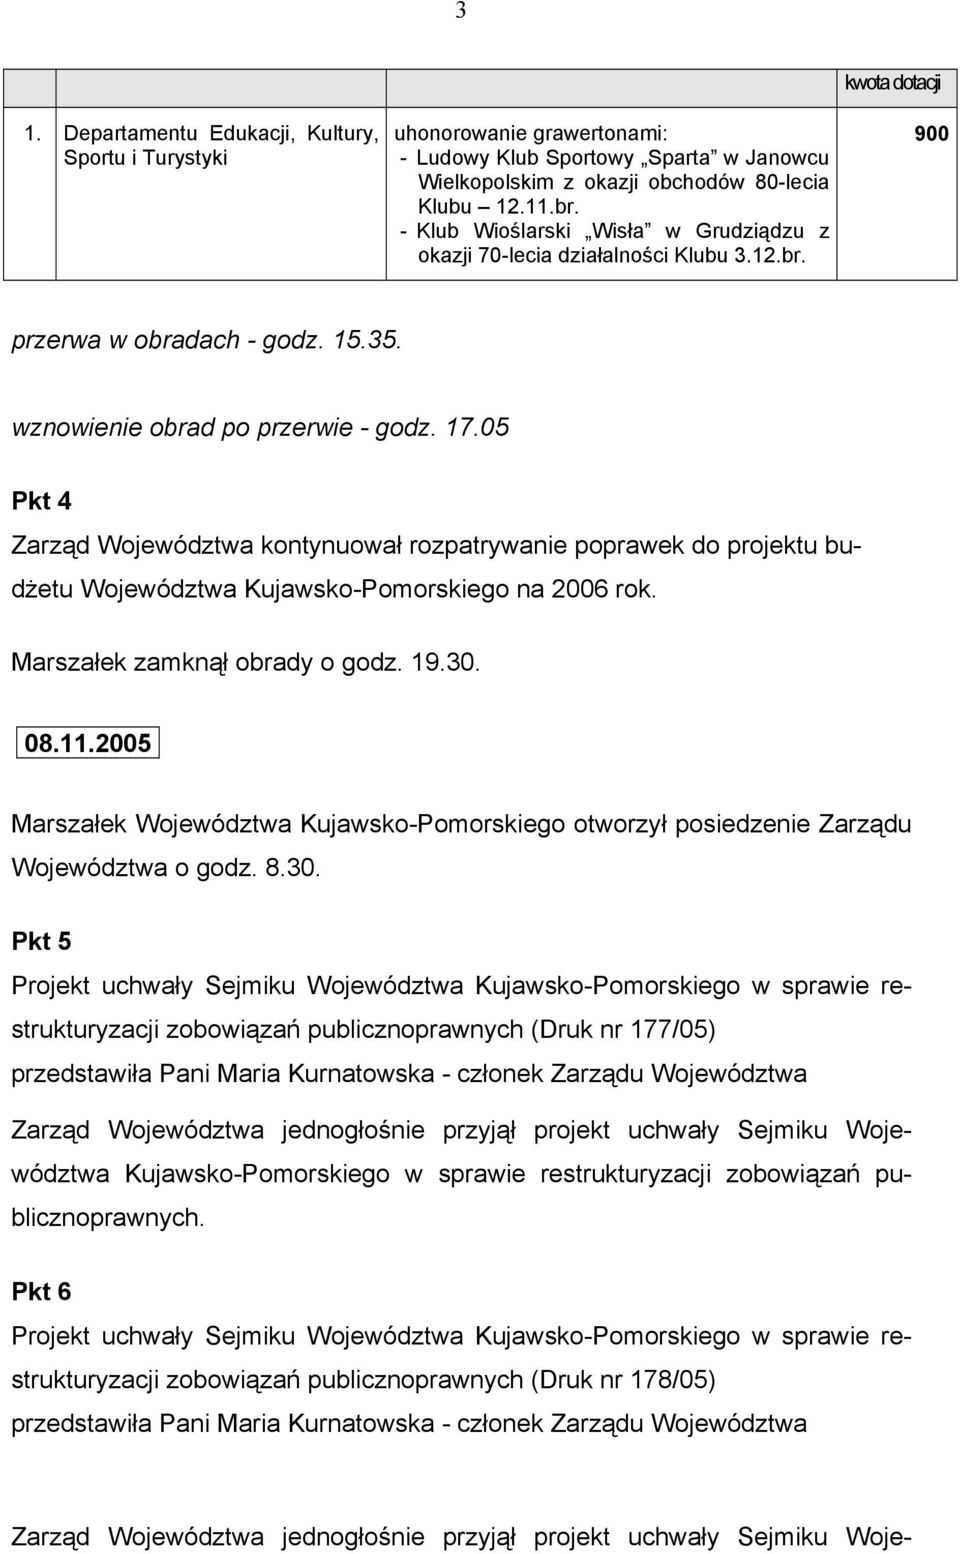 05 Pkt 4 Zarząd Województwa kontynuował rozpatrywanie poprawek do projektu budżetu Województwa Kujawsko-Pomorskiego na 2006 rok. Marszałek zamknął obrady o godz. 19.30. 08.11.2005.